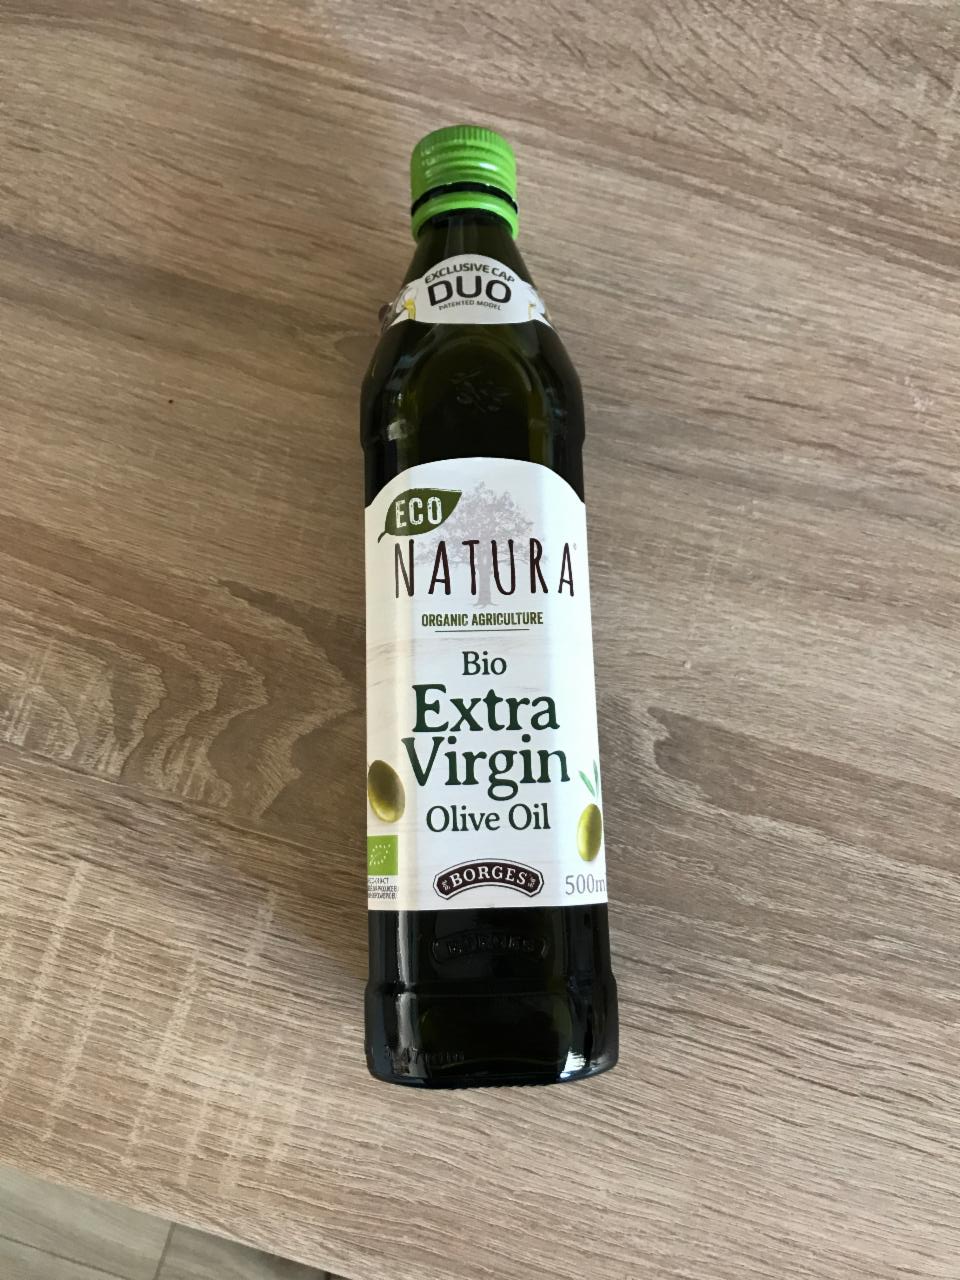 Fotografie - ECO natura virgin olive oil